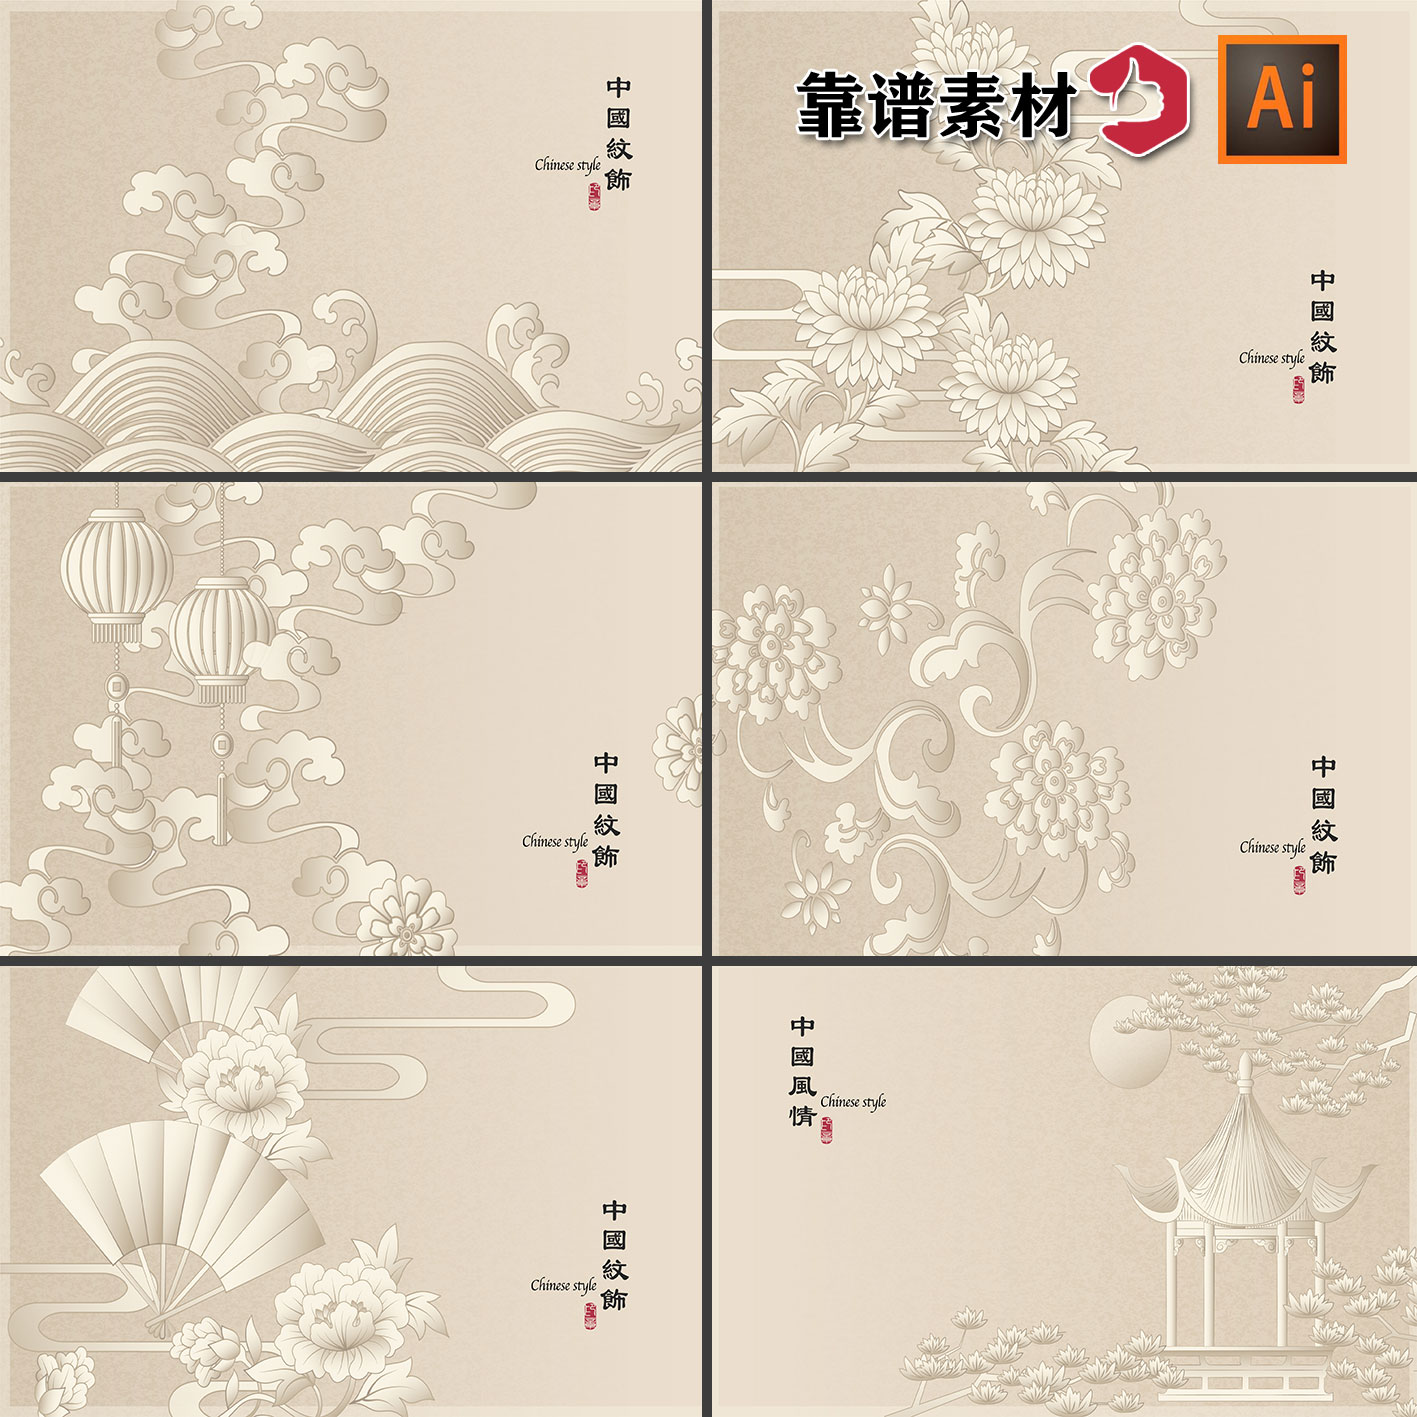 牡丹祥云灯笼亭子云纹花纹花边中国风传统纹饰纹样AI矢量设计素材